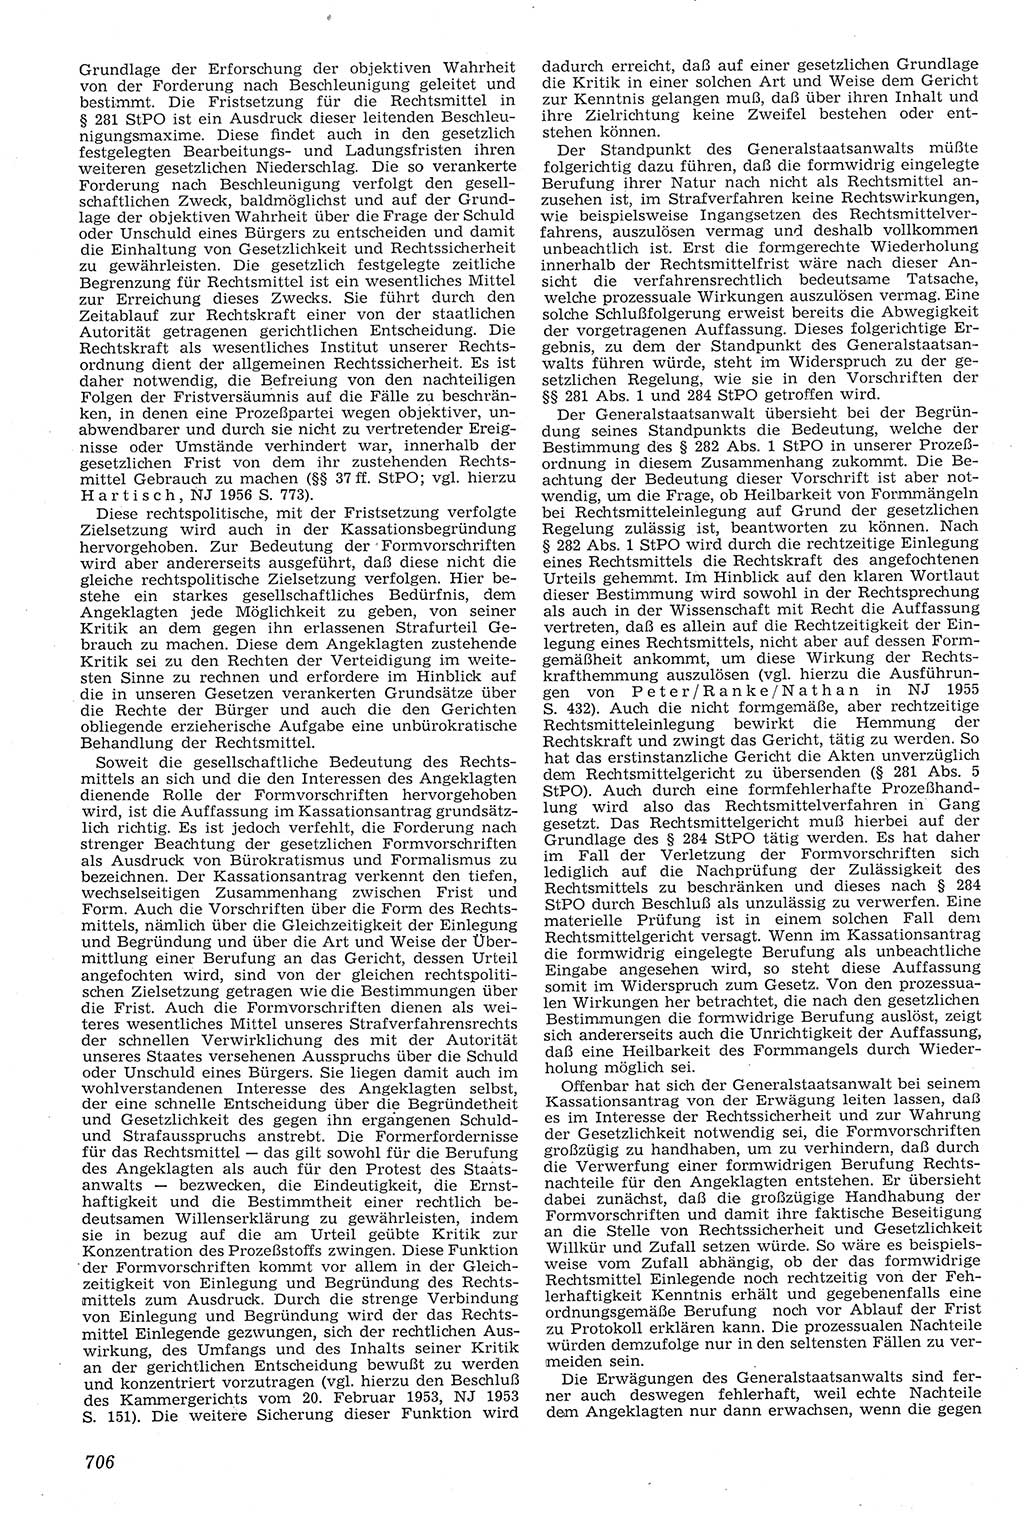 Neue Justiz (NJ), Zeitschrift für Recht und Rechtswissenschaft [Deutsche Demokratische Republik (DDR)], 11. Jahrgang 1957, Seite 706 (NJ DDR 1957, S. 706)